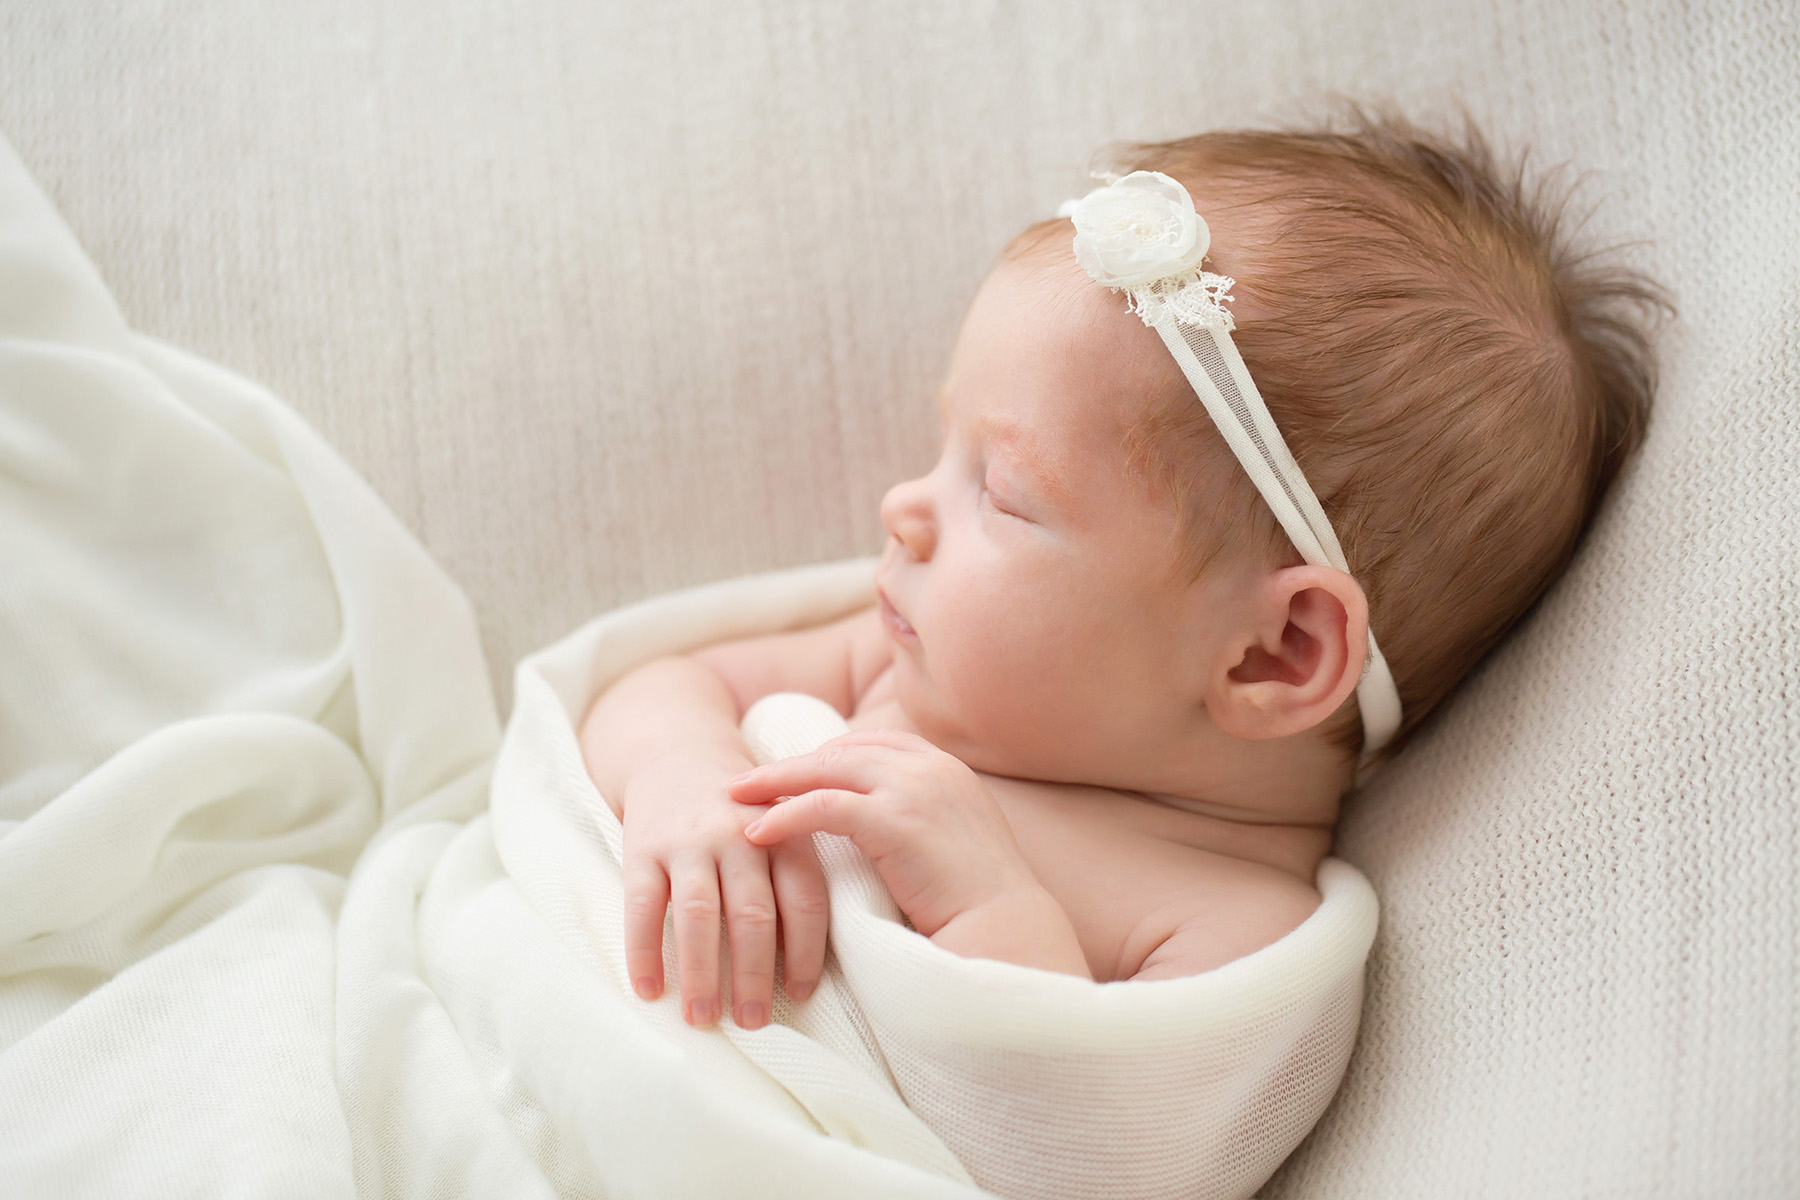 Louisville KY newborn photographer | Julie Brock Photography | maternity | family | louisville photography studio | natural newborn baby photography in Louisville